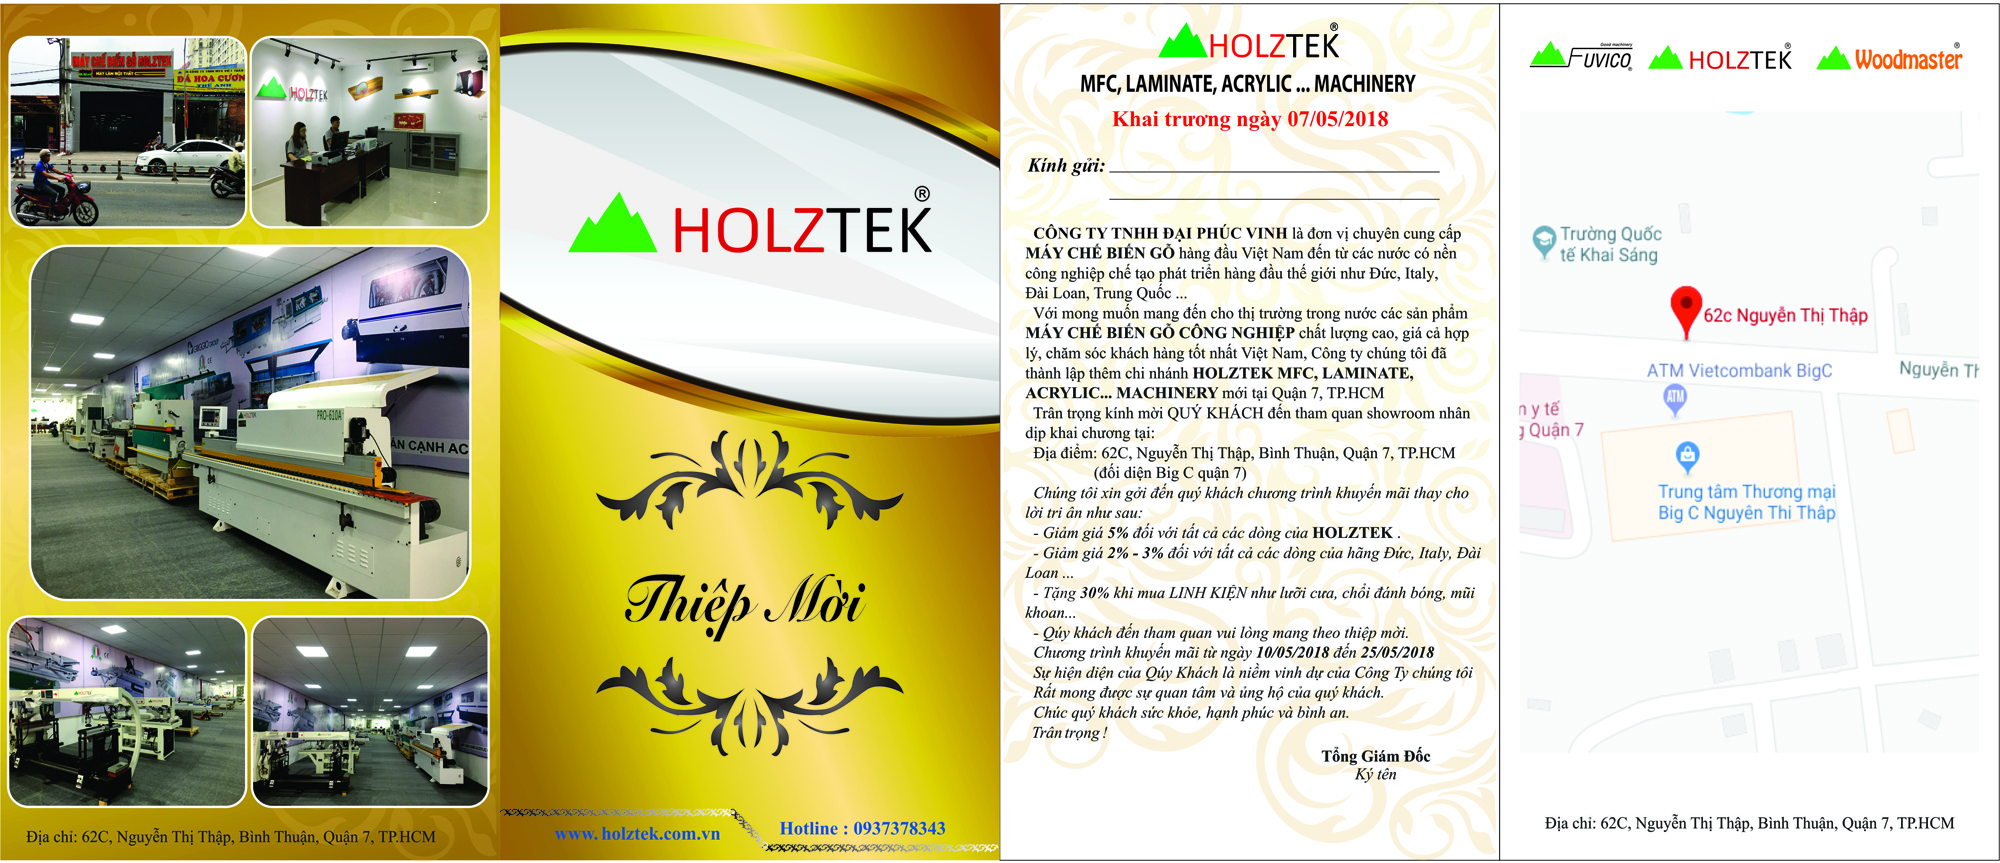 Khuyến mãi lớn nhân dịp khai trương Holztek Q7, TP HCM